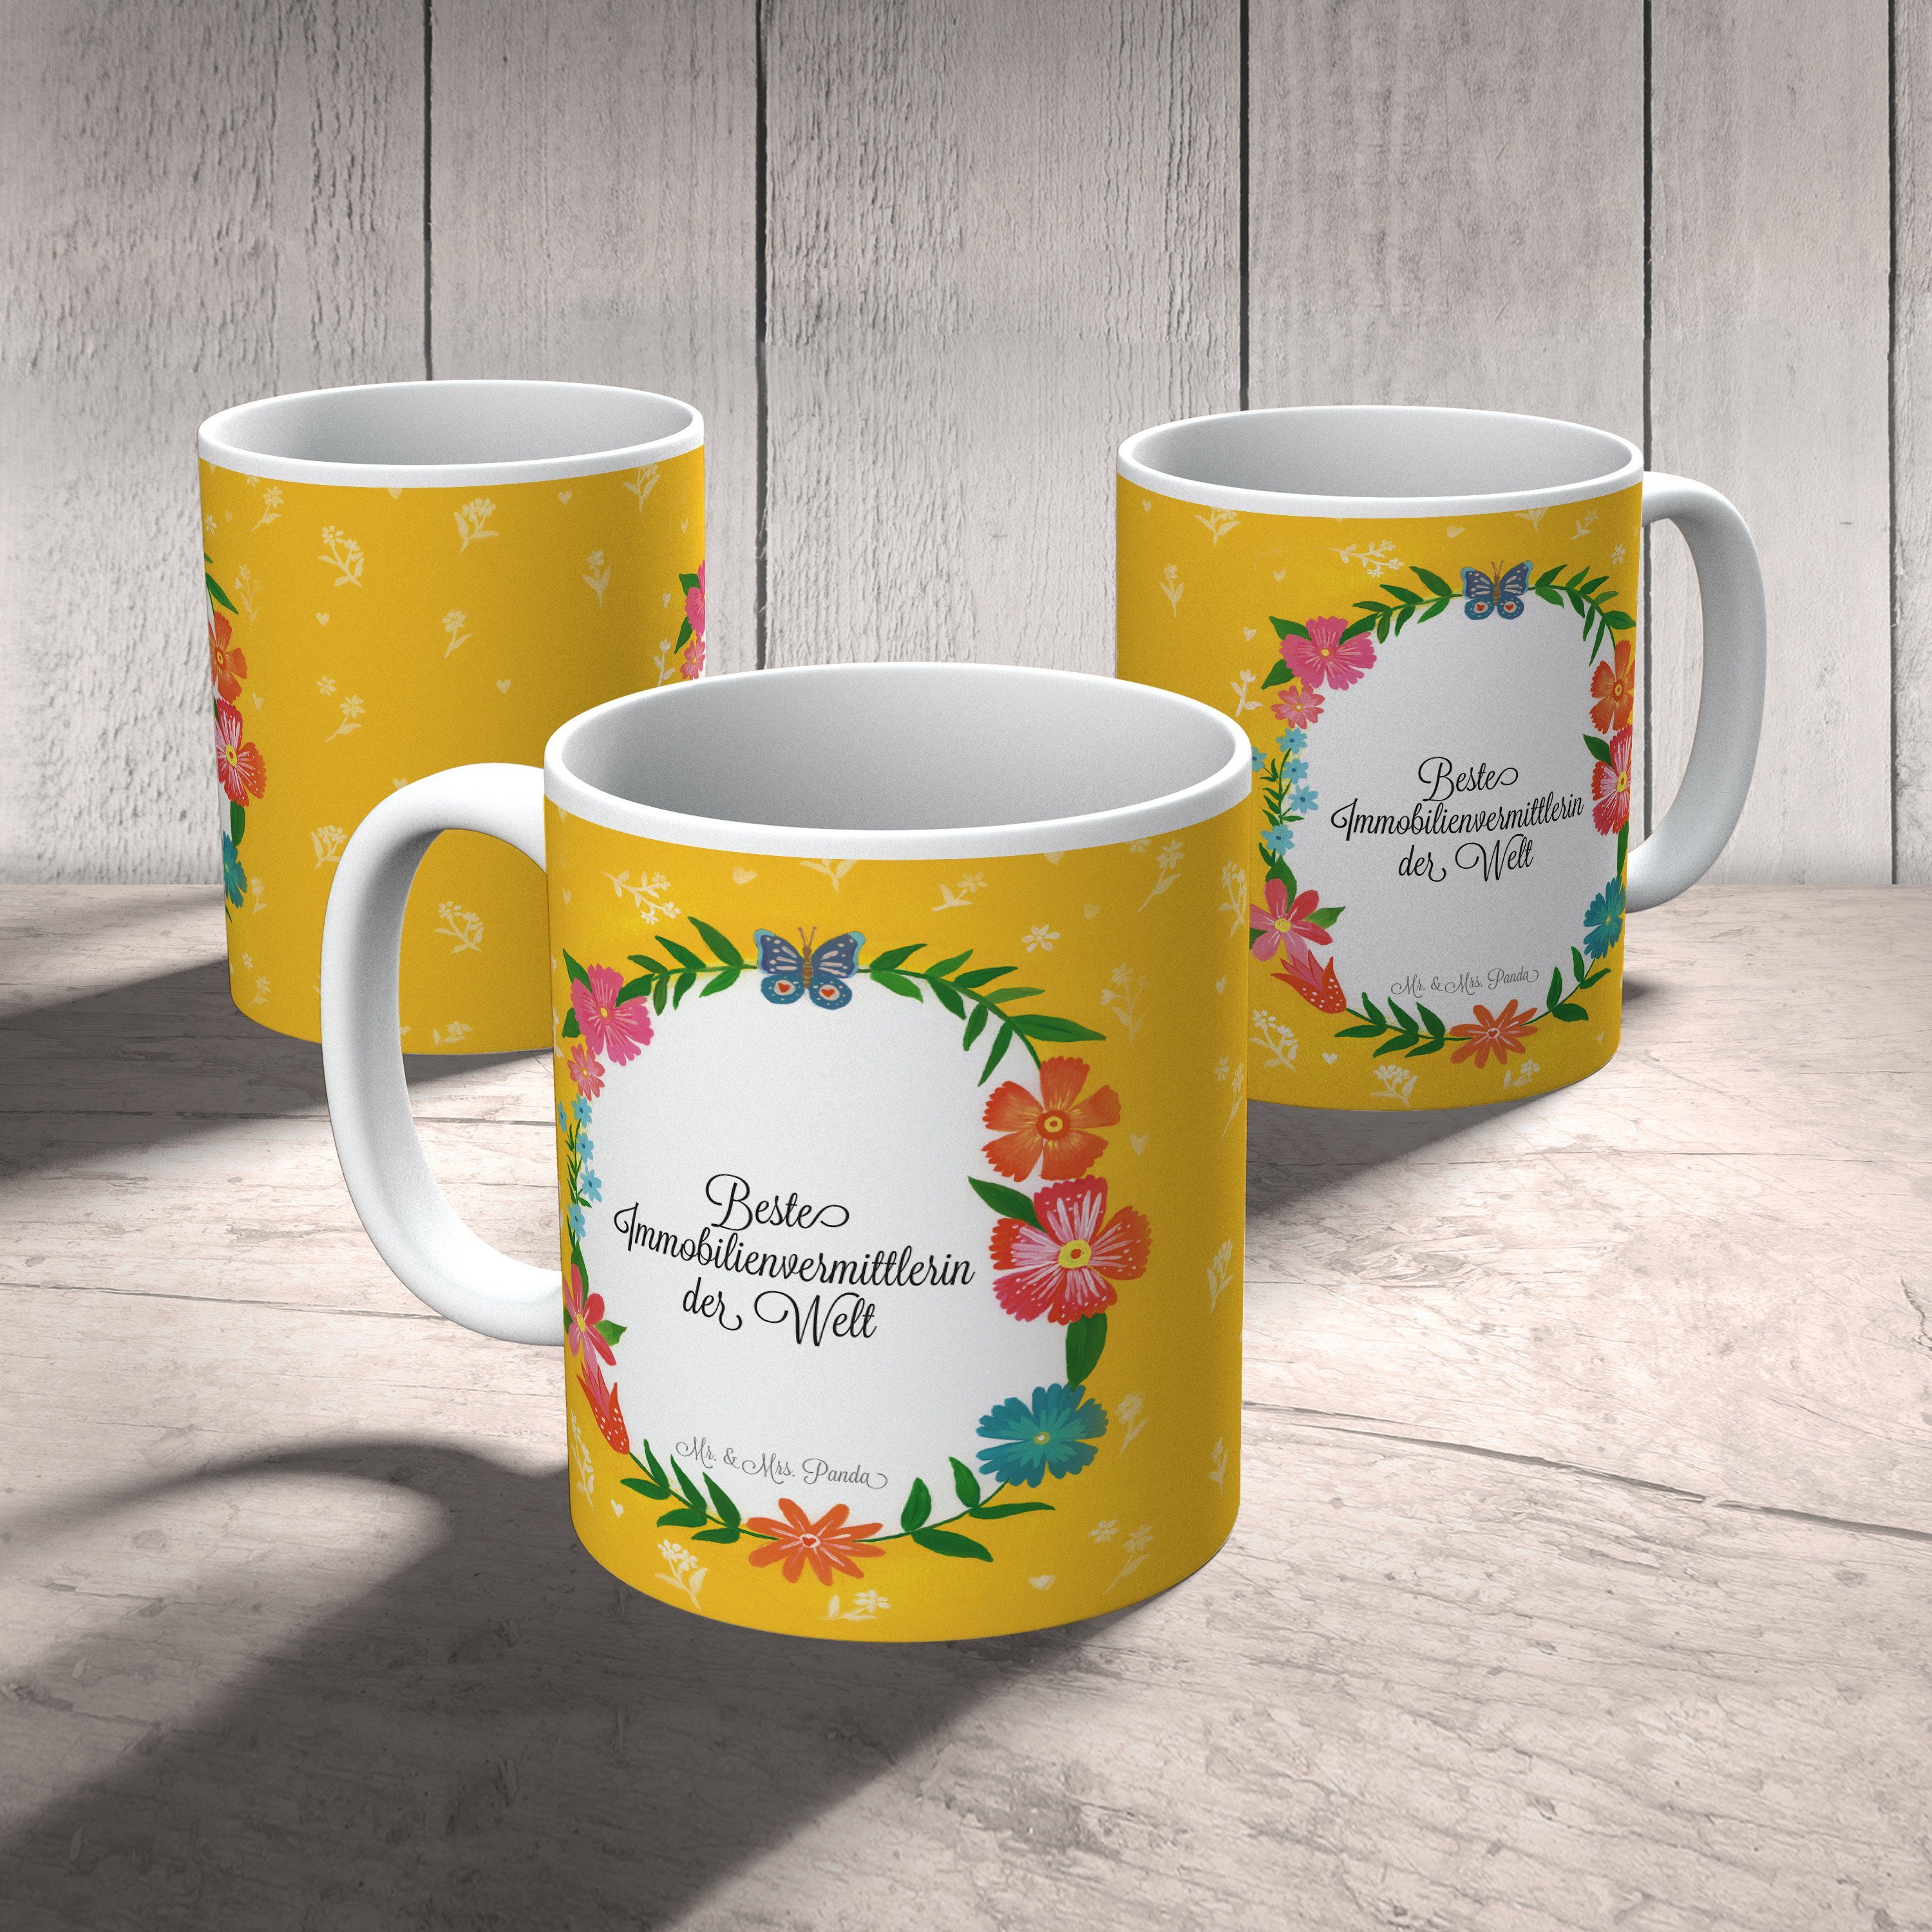 Mr. & Mrs. Geschenk, - Immobilienvermittlerin Kaffeebecher, Panda Tasse Keramiktas, Keramik Schenken